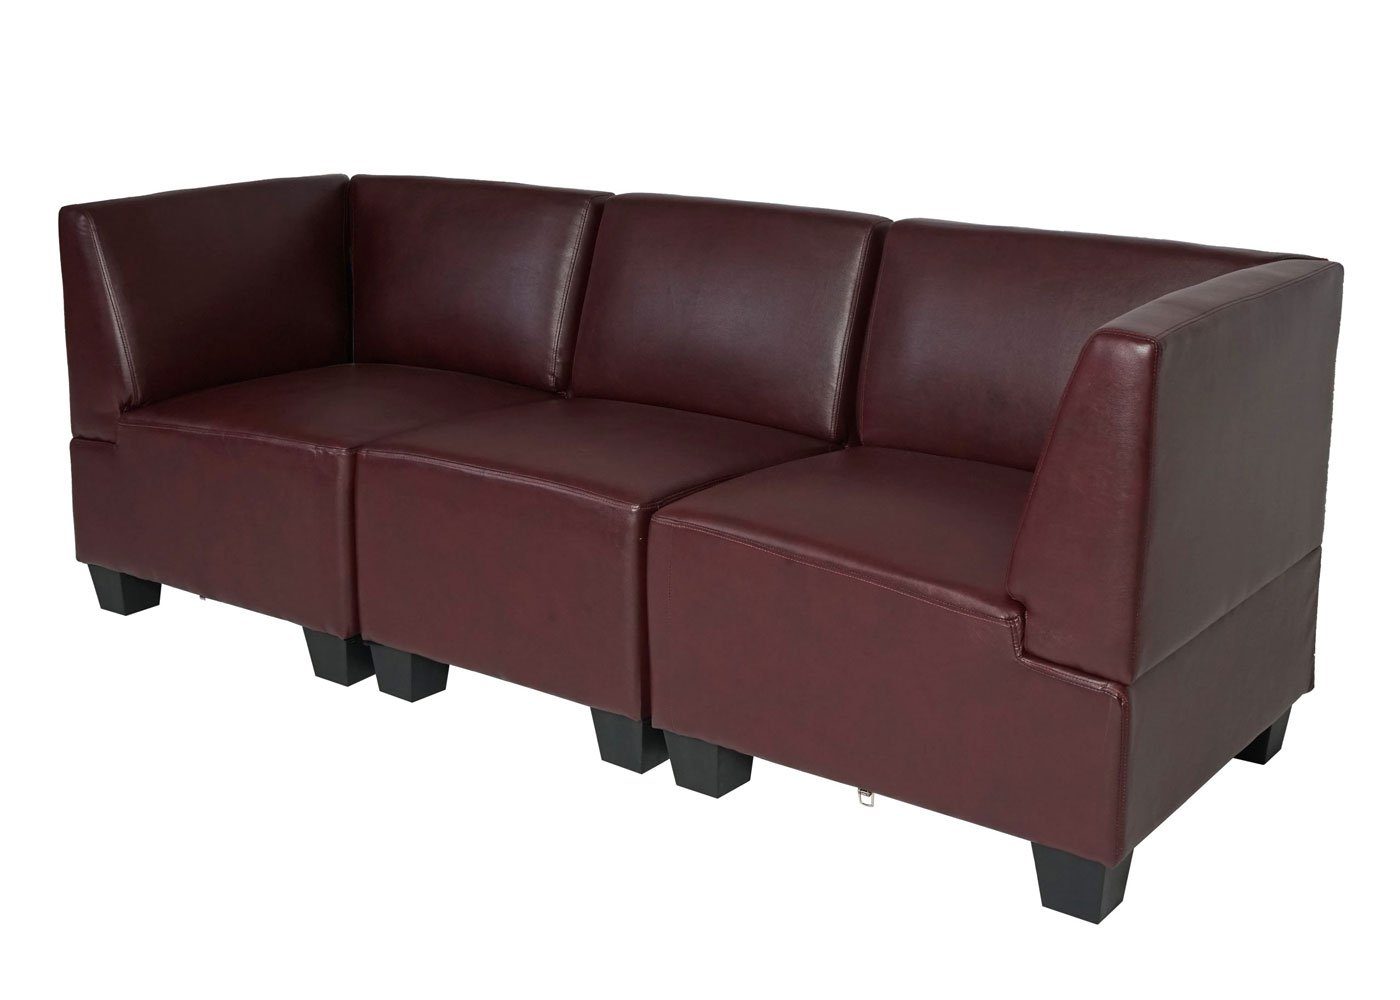 moderner rot-braun Moncalieri-3S, rot-braun | MCW hochwertige bequeme Lounge-Stil, 3-Sitzer Polsterung Verarbeitung,